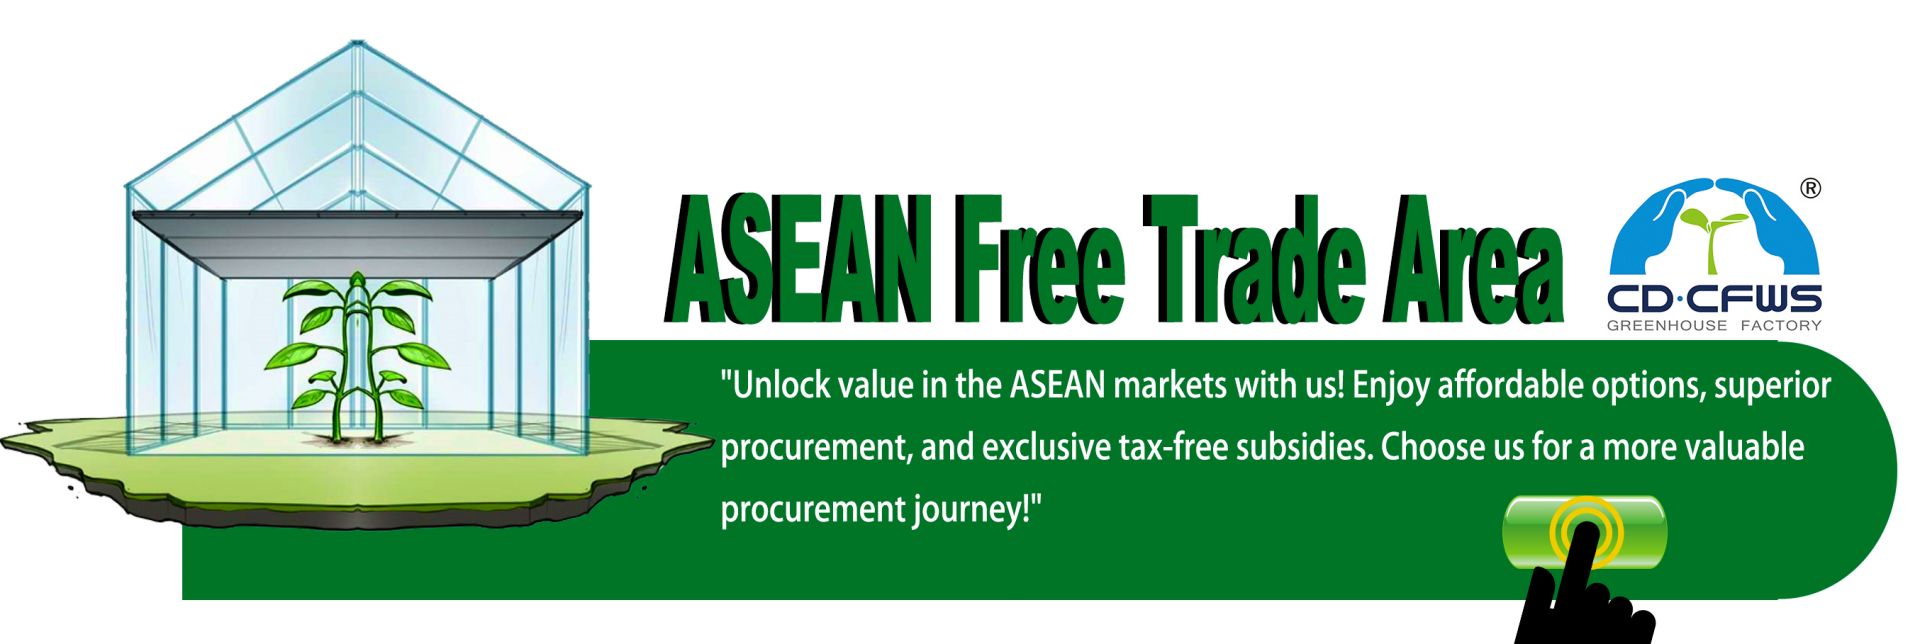 Kebijakan pengecualian pajak ASEAN